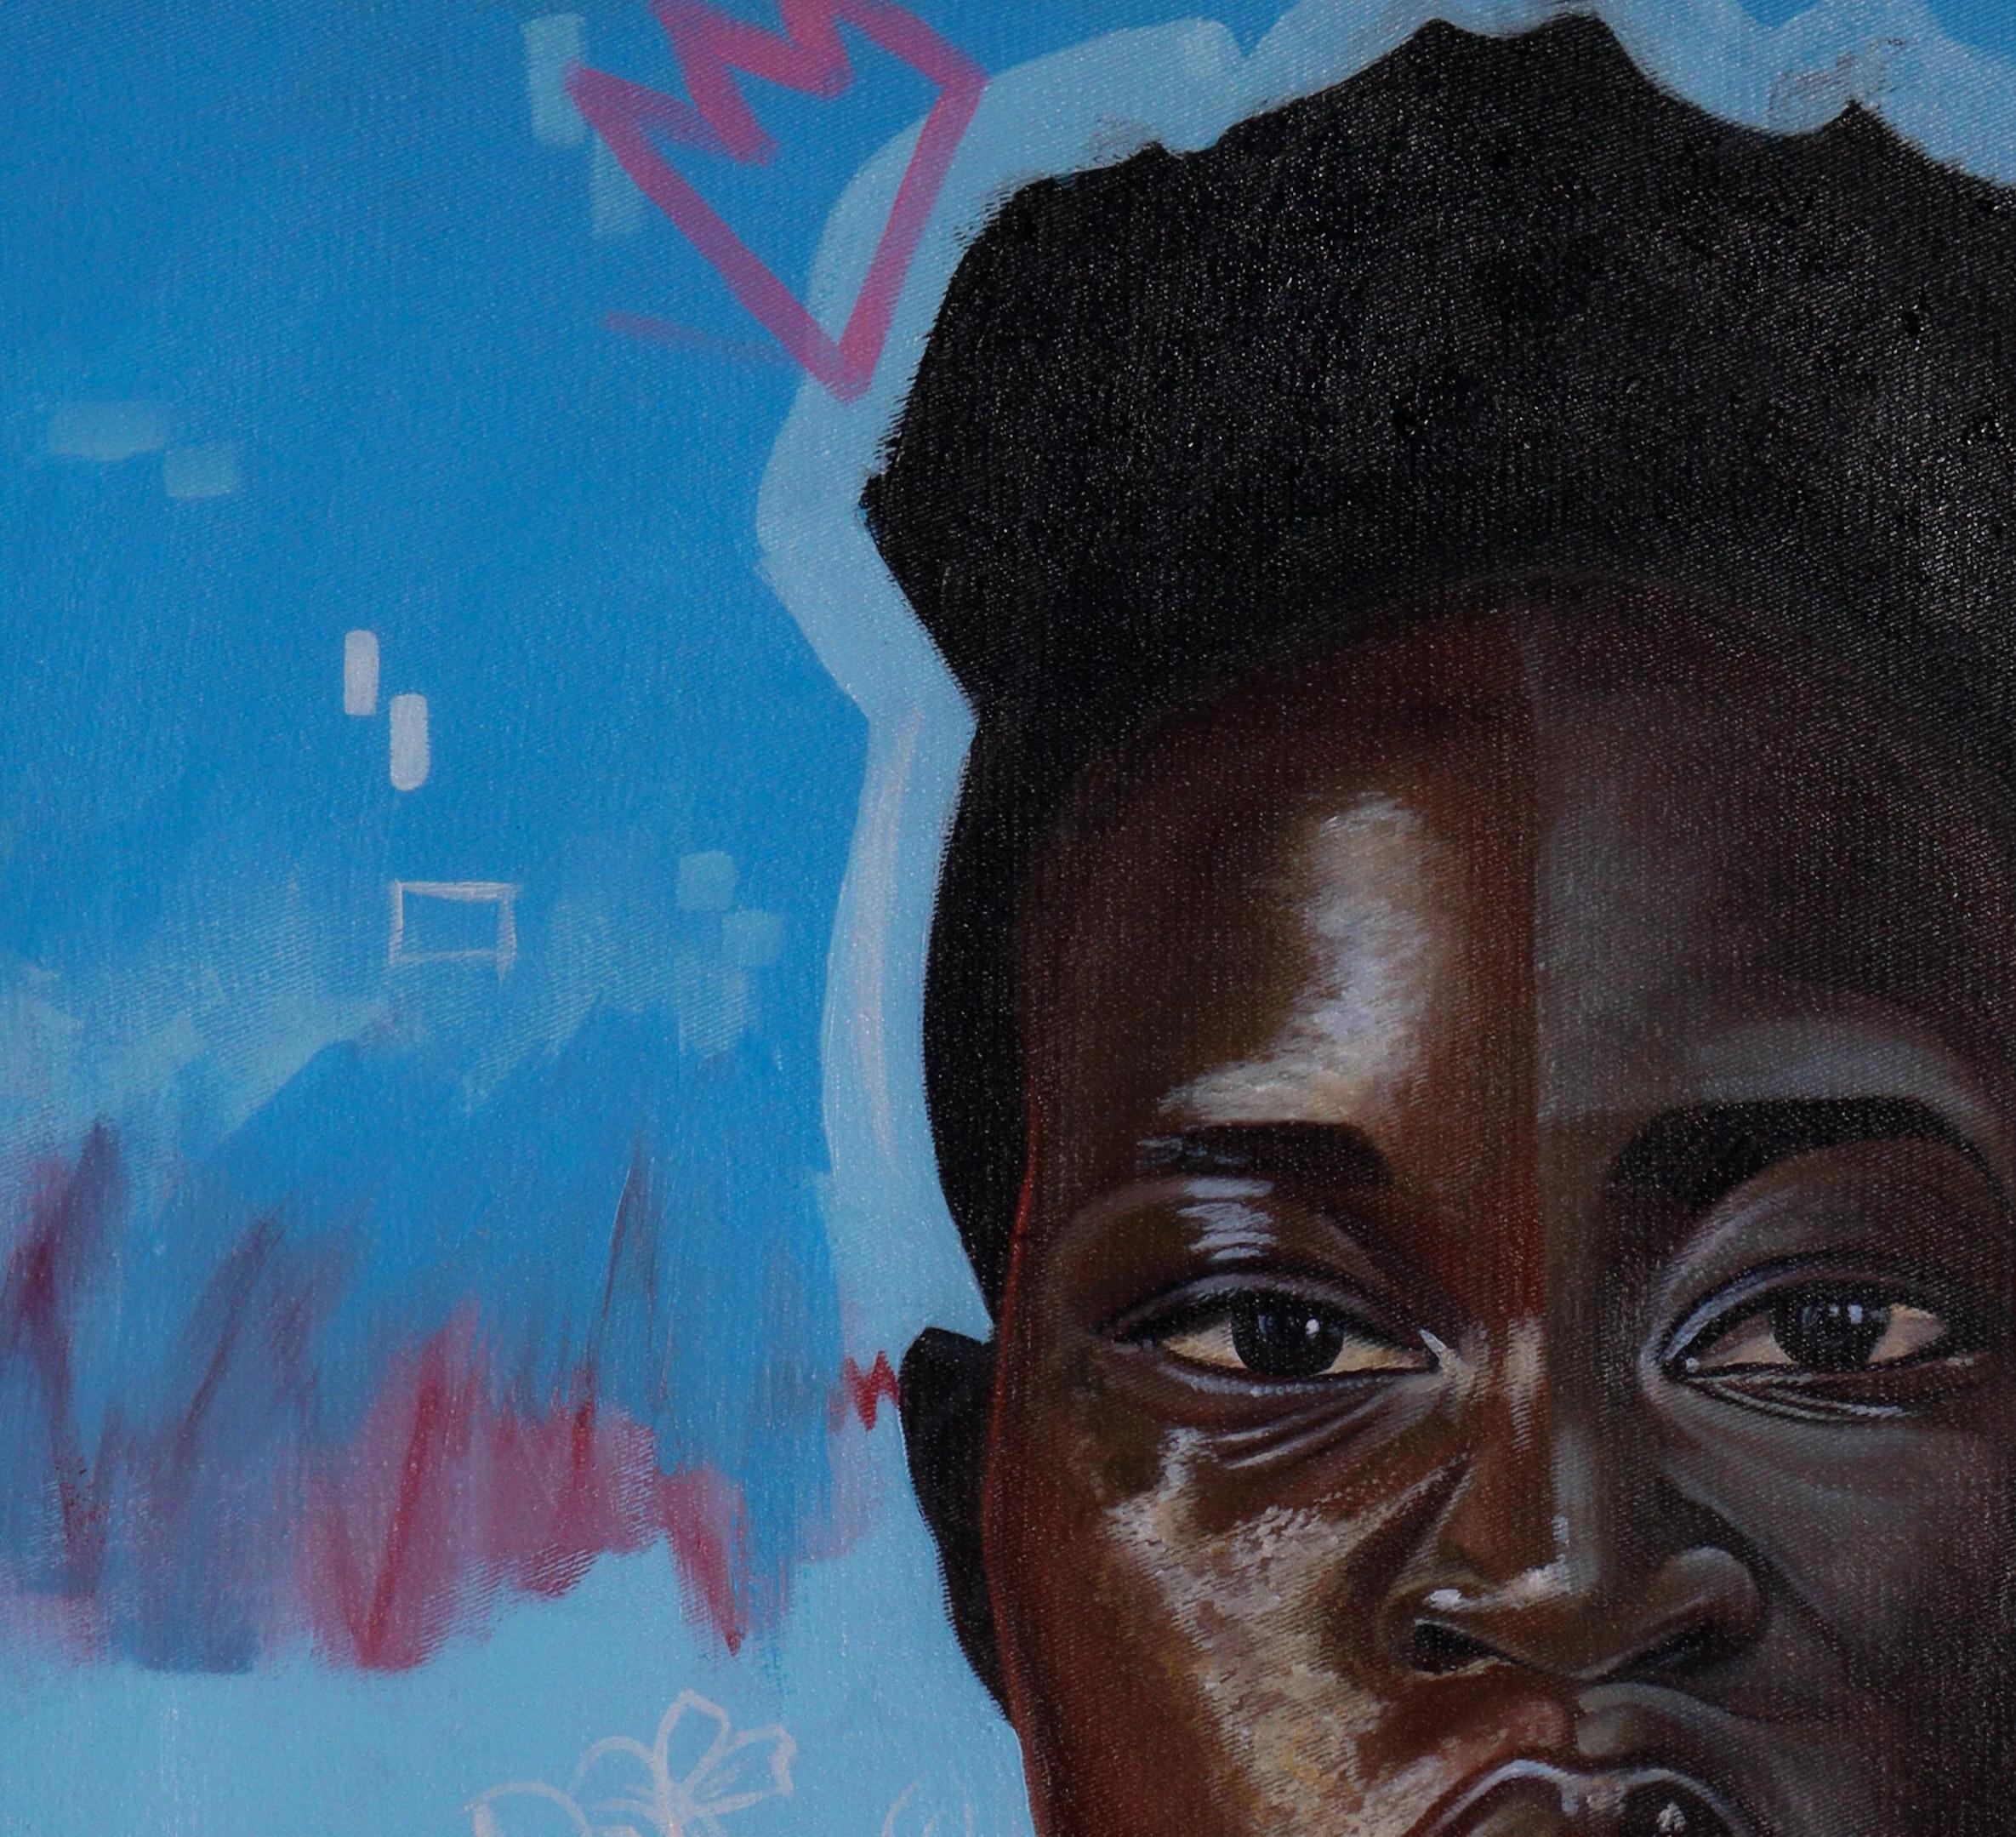 Dazwischen – Painting von Clinton Odhiambo